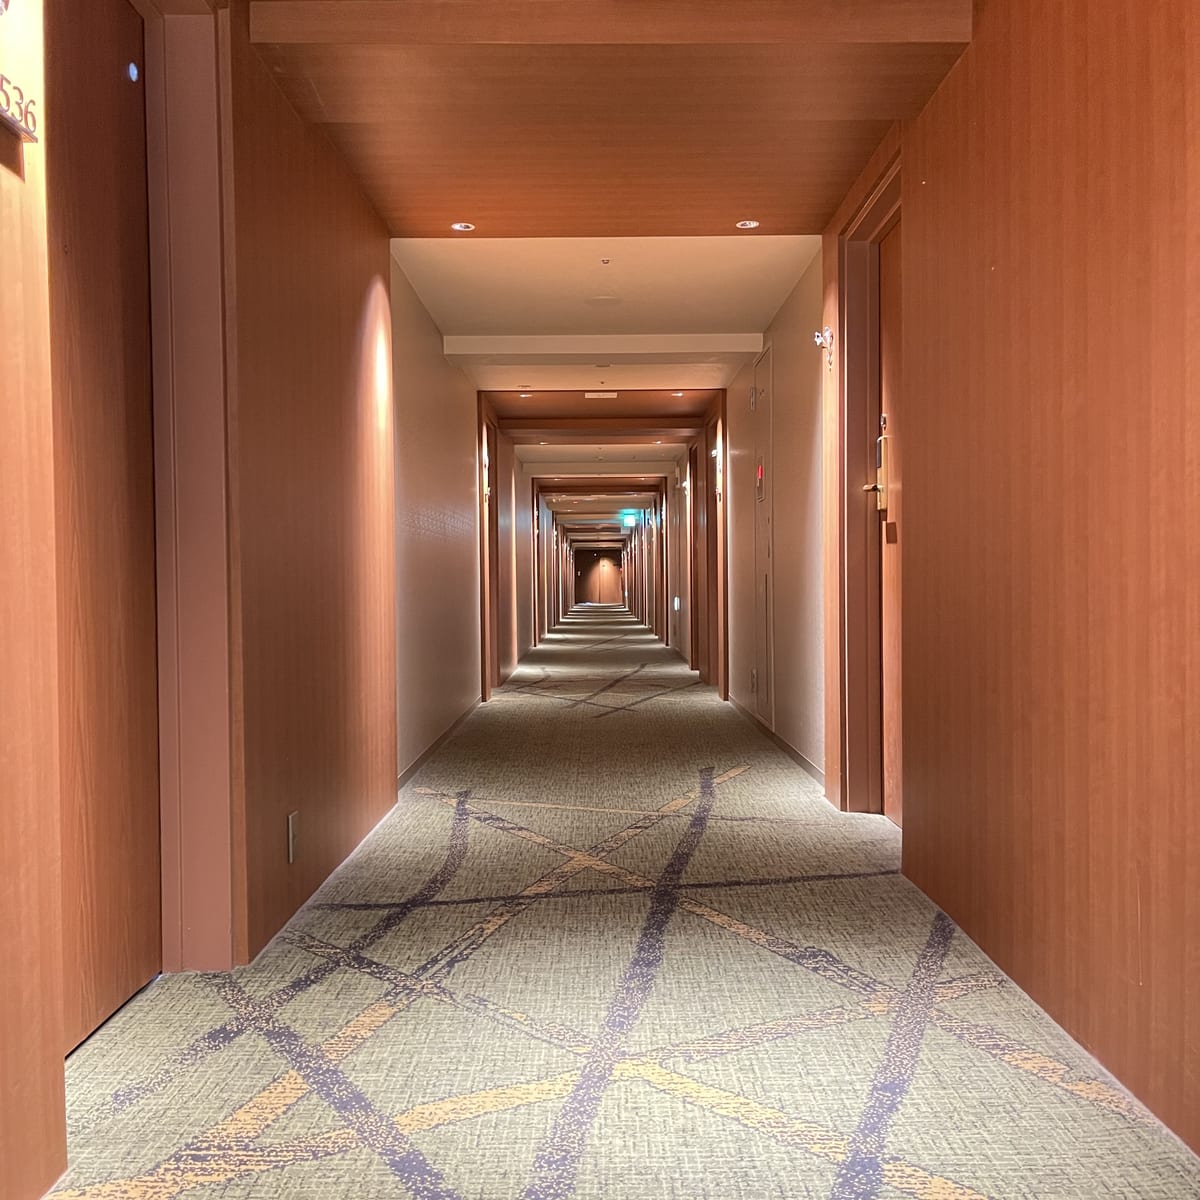 アニメに登場したホテルのモデルとなったリーガロイヤルホテル京都の客室フロア